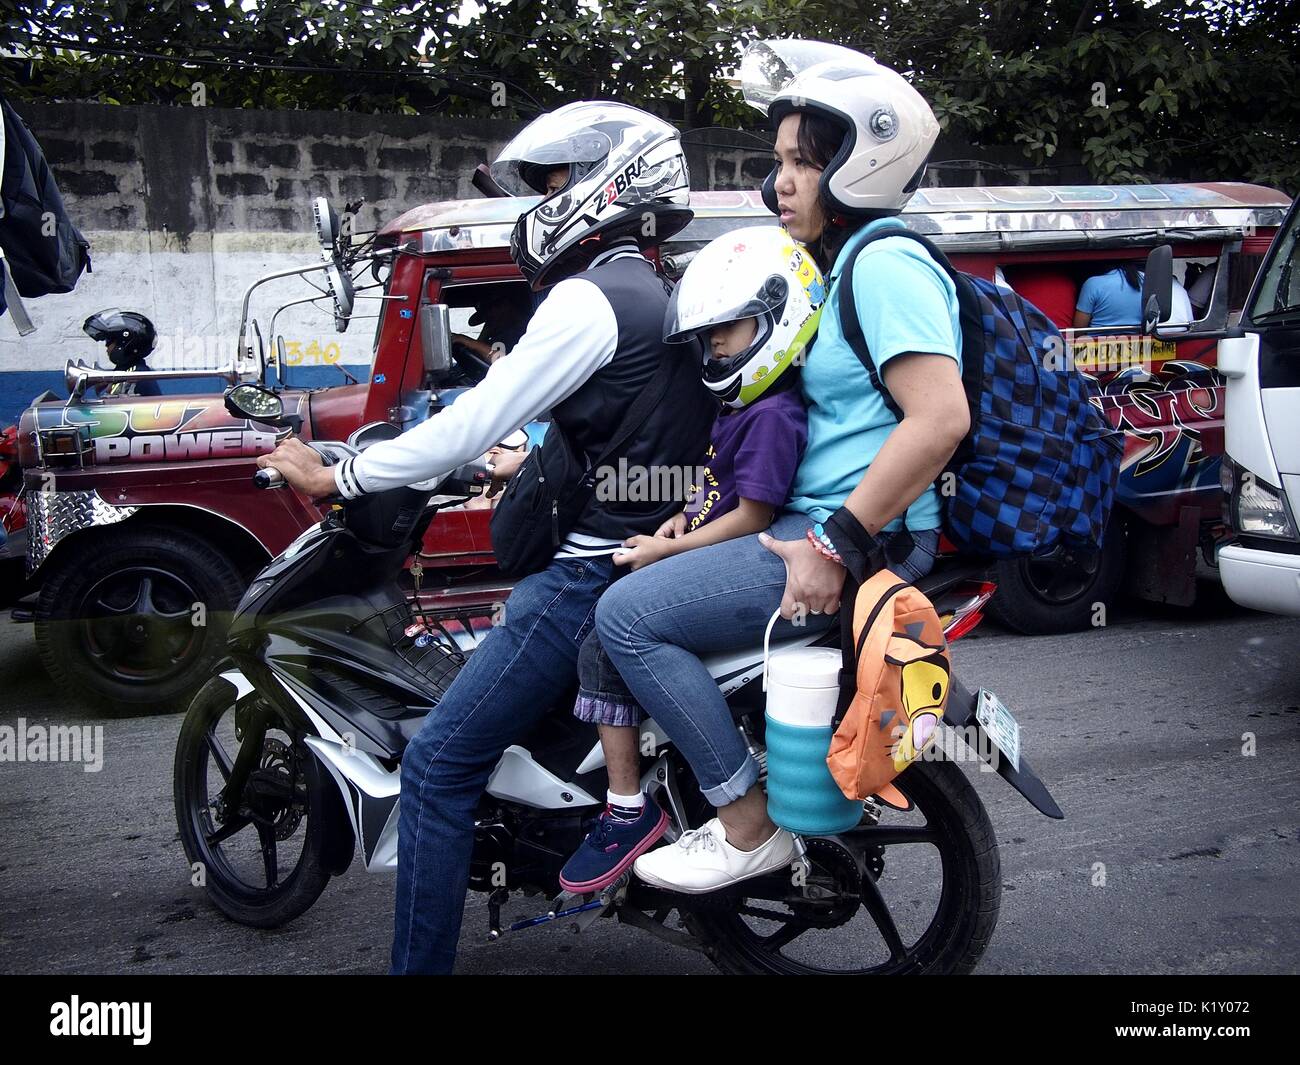 ANTIPOLO, FILIPINAS - Agosto 25, 2017: Una familia de tres personas en una motocicleta esperar el flujo de tráfico en una carretera muy transitada. Foto de stock